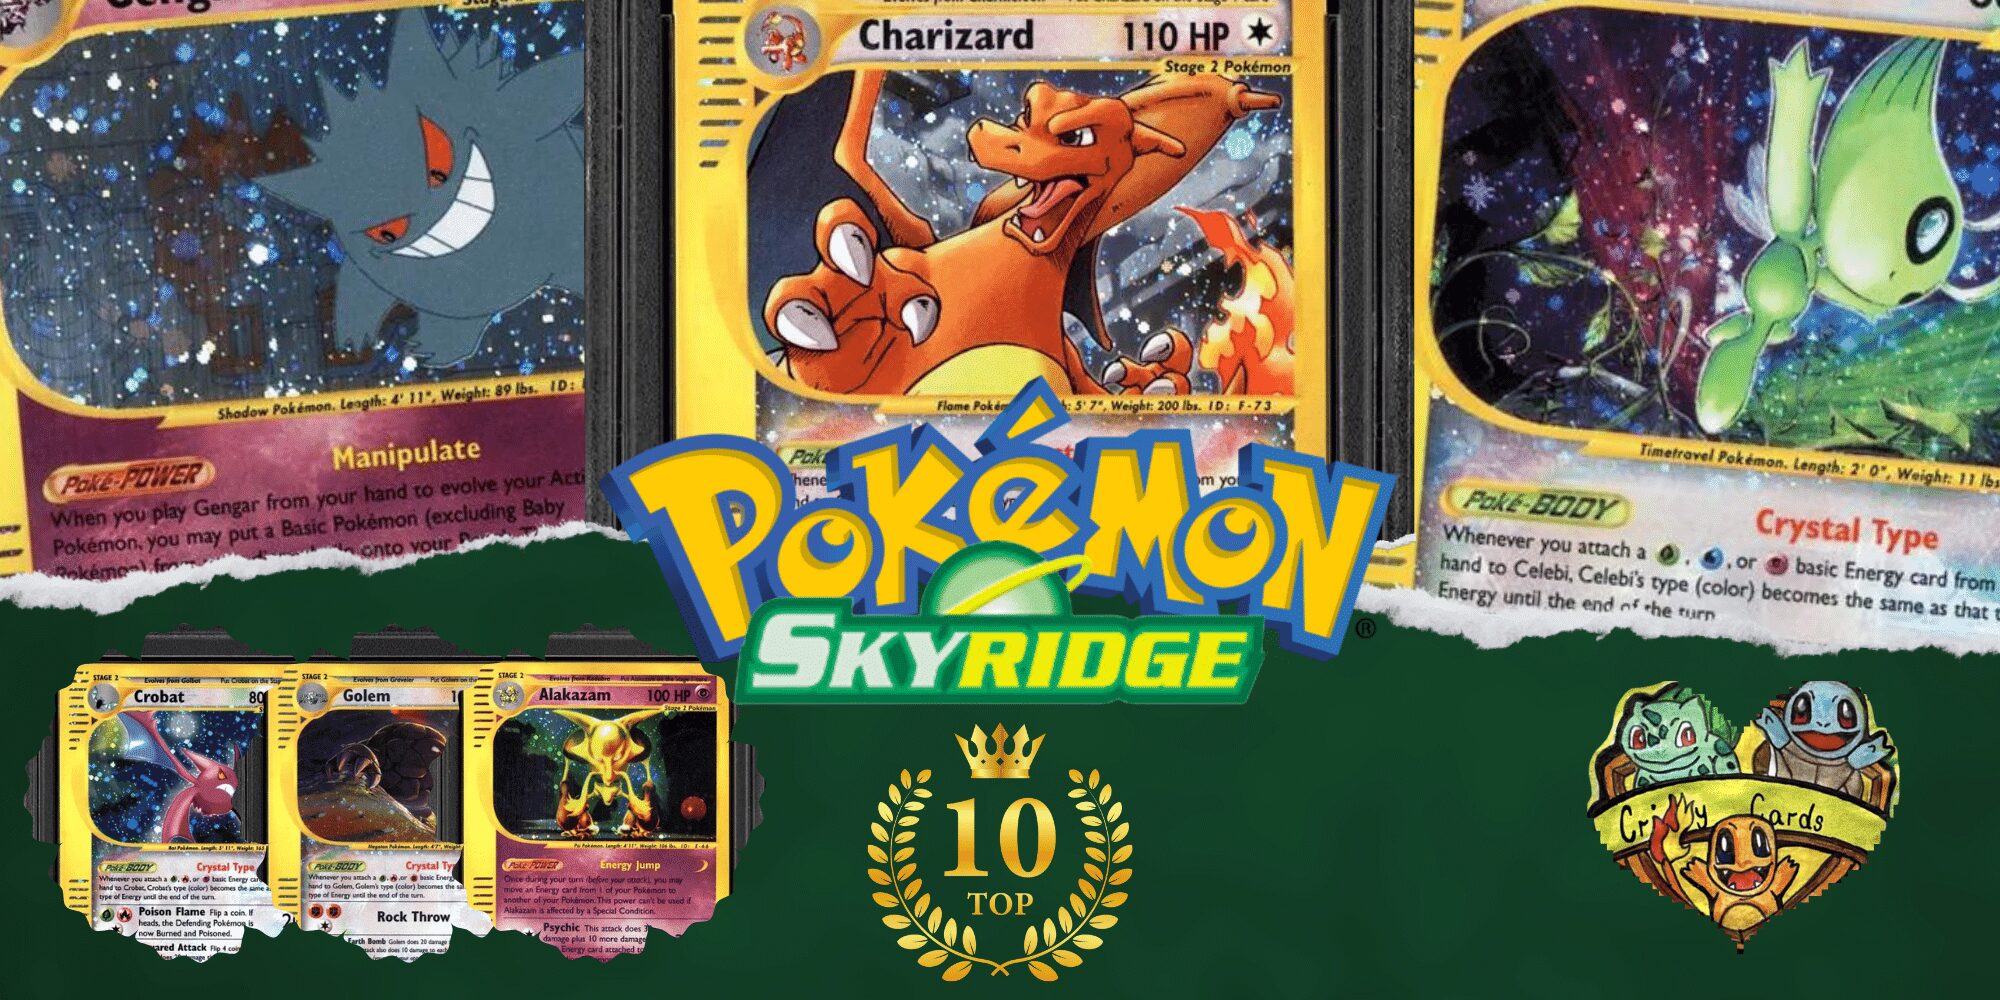 Die seltensten Pokémon Skyridge Karten